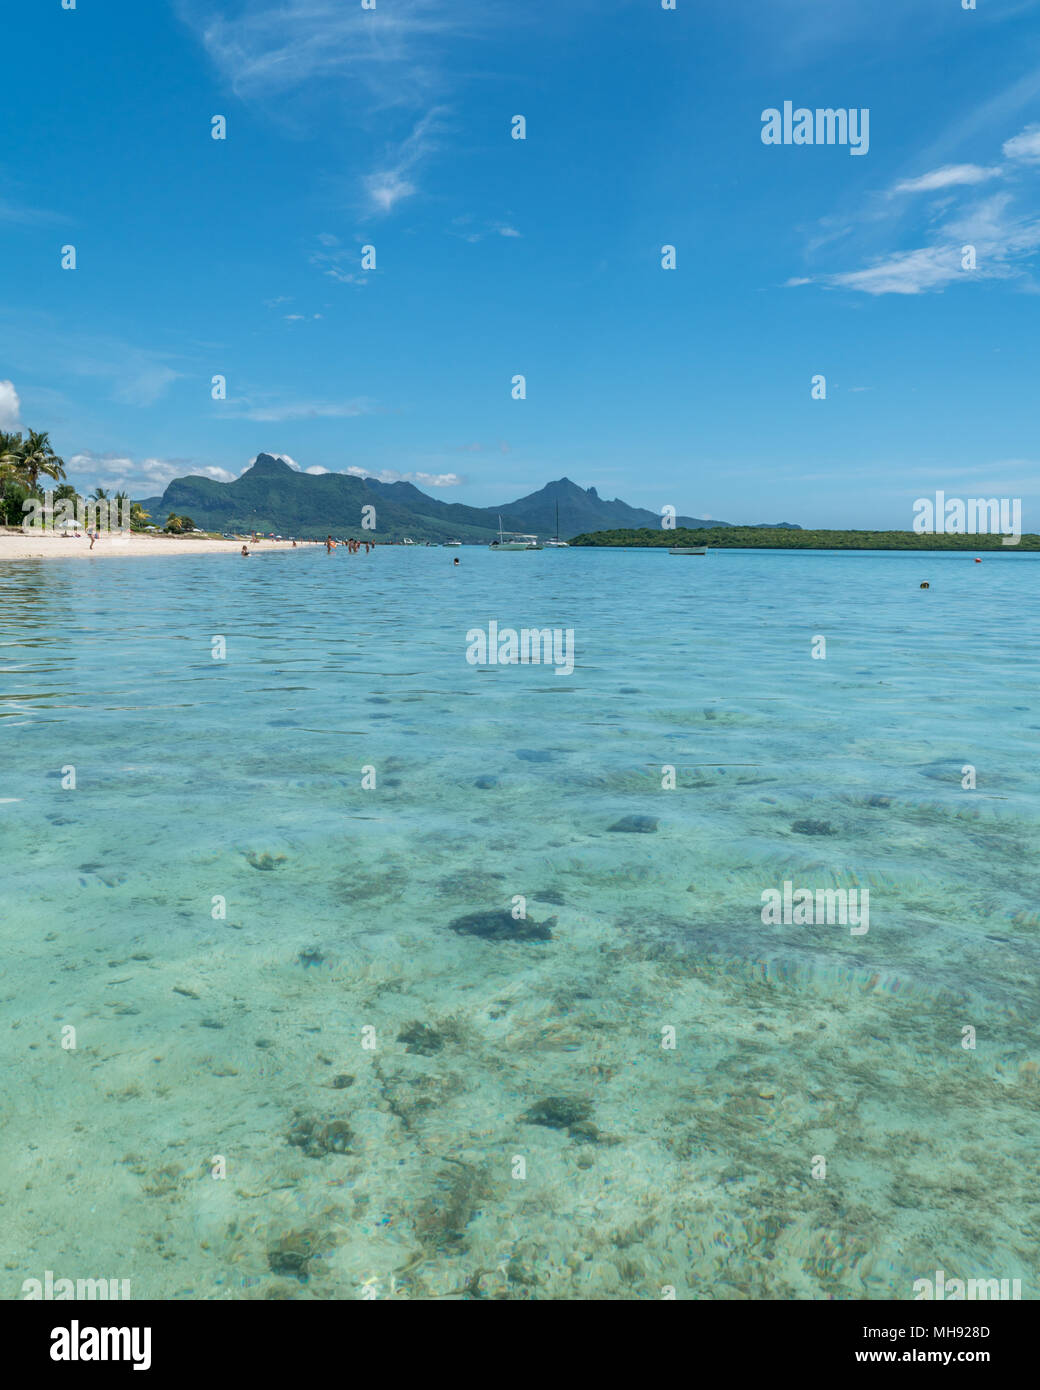 Straordinaria spiaggia sull'isola Mauritius. Proboblany il la maggior parte delle spiagge di epica int del mondo. Foto Stock